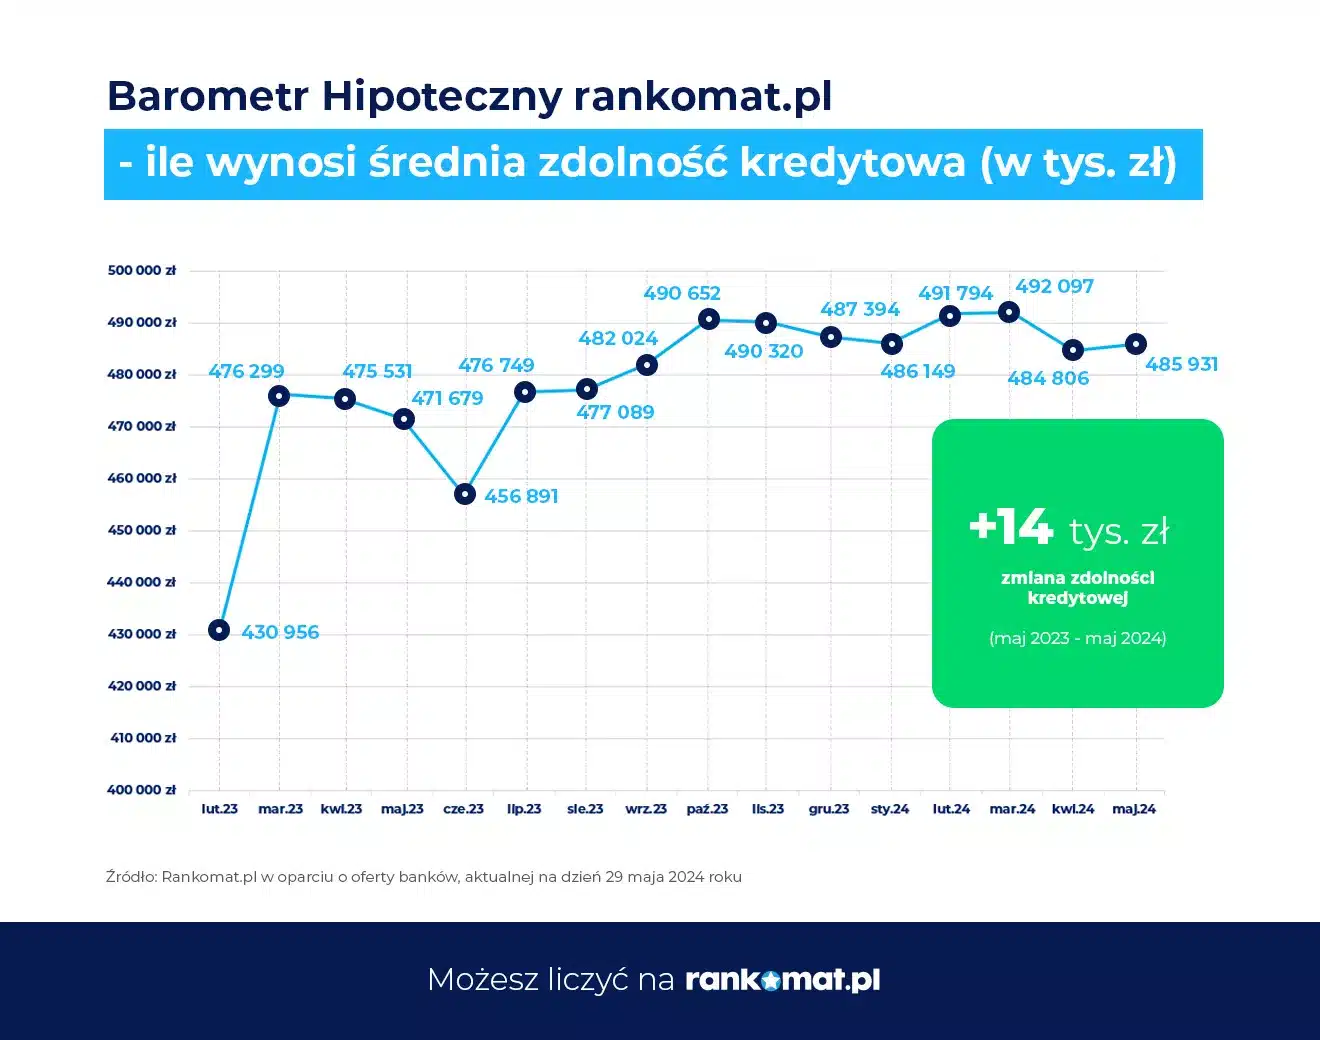 Barometr Hipoteczny rankomat.pl - średnia zdolność kredytowa